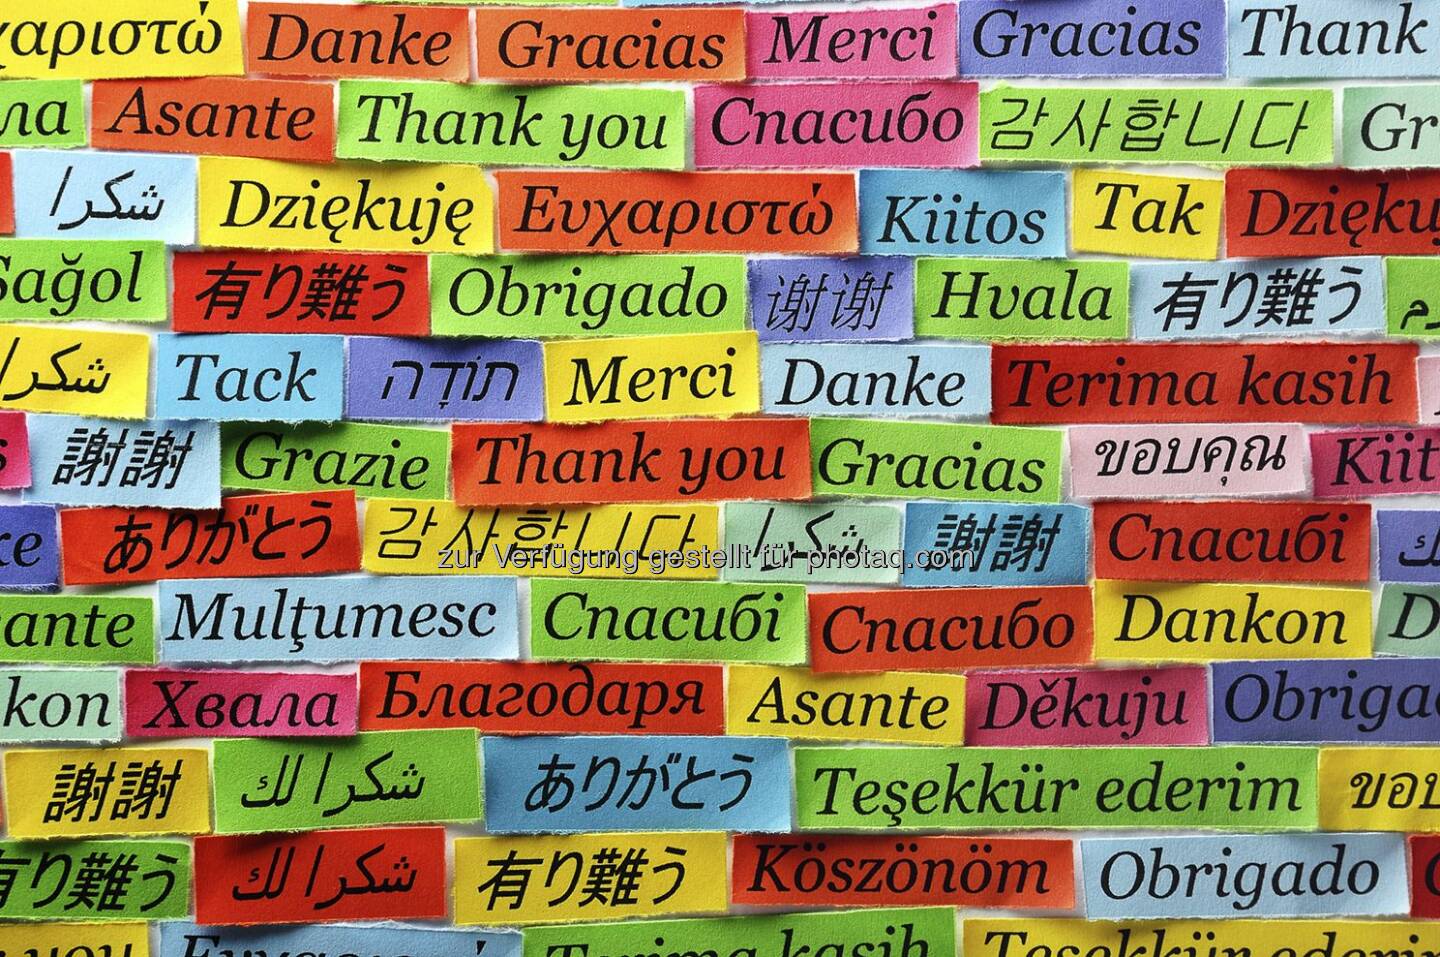 Morgen ist internationaler Tag der Muttersprache. Was glauben Sie, wie viele Sprachen es auf der Welt gibt?

A: 300 - 600 
B: 900 - 1.500
C: 3.500 - 4.000
D: 6.500 - 7.000  Source: http://facebook.com/uniqa.at